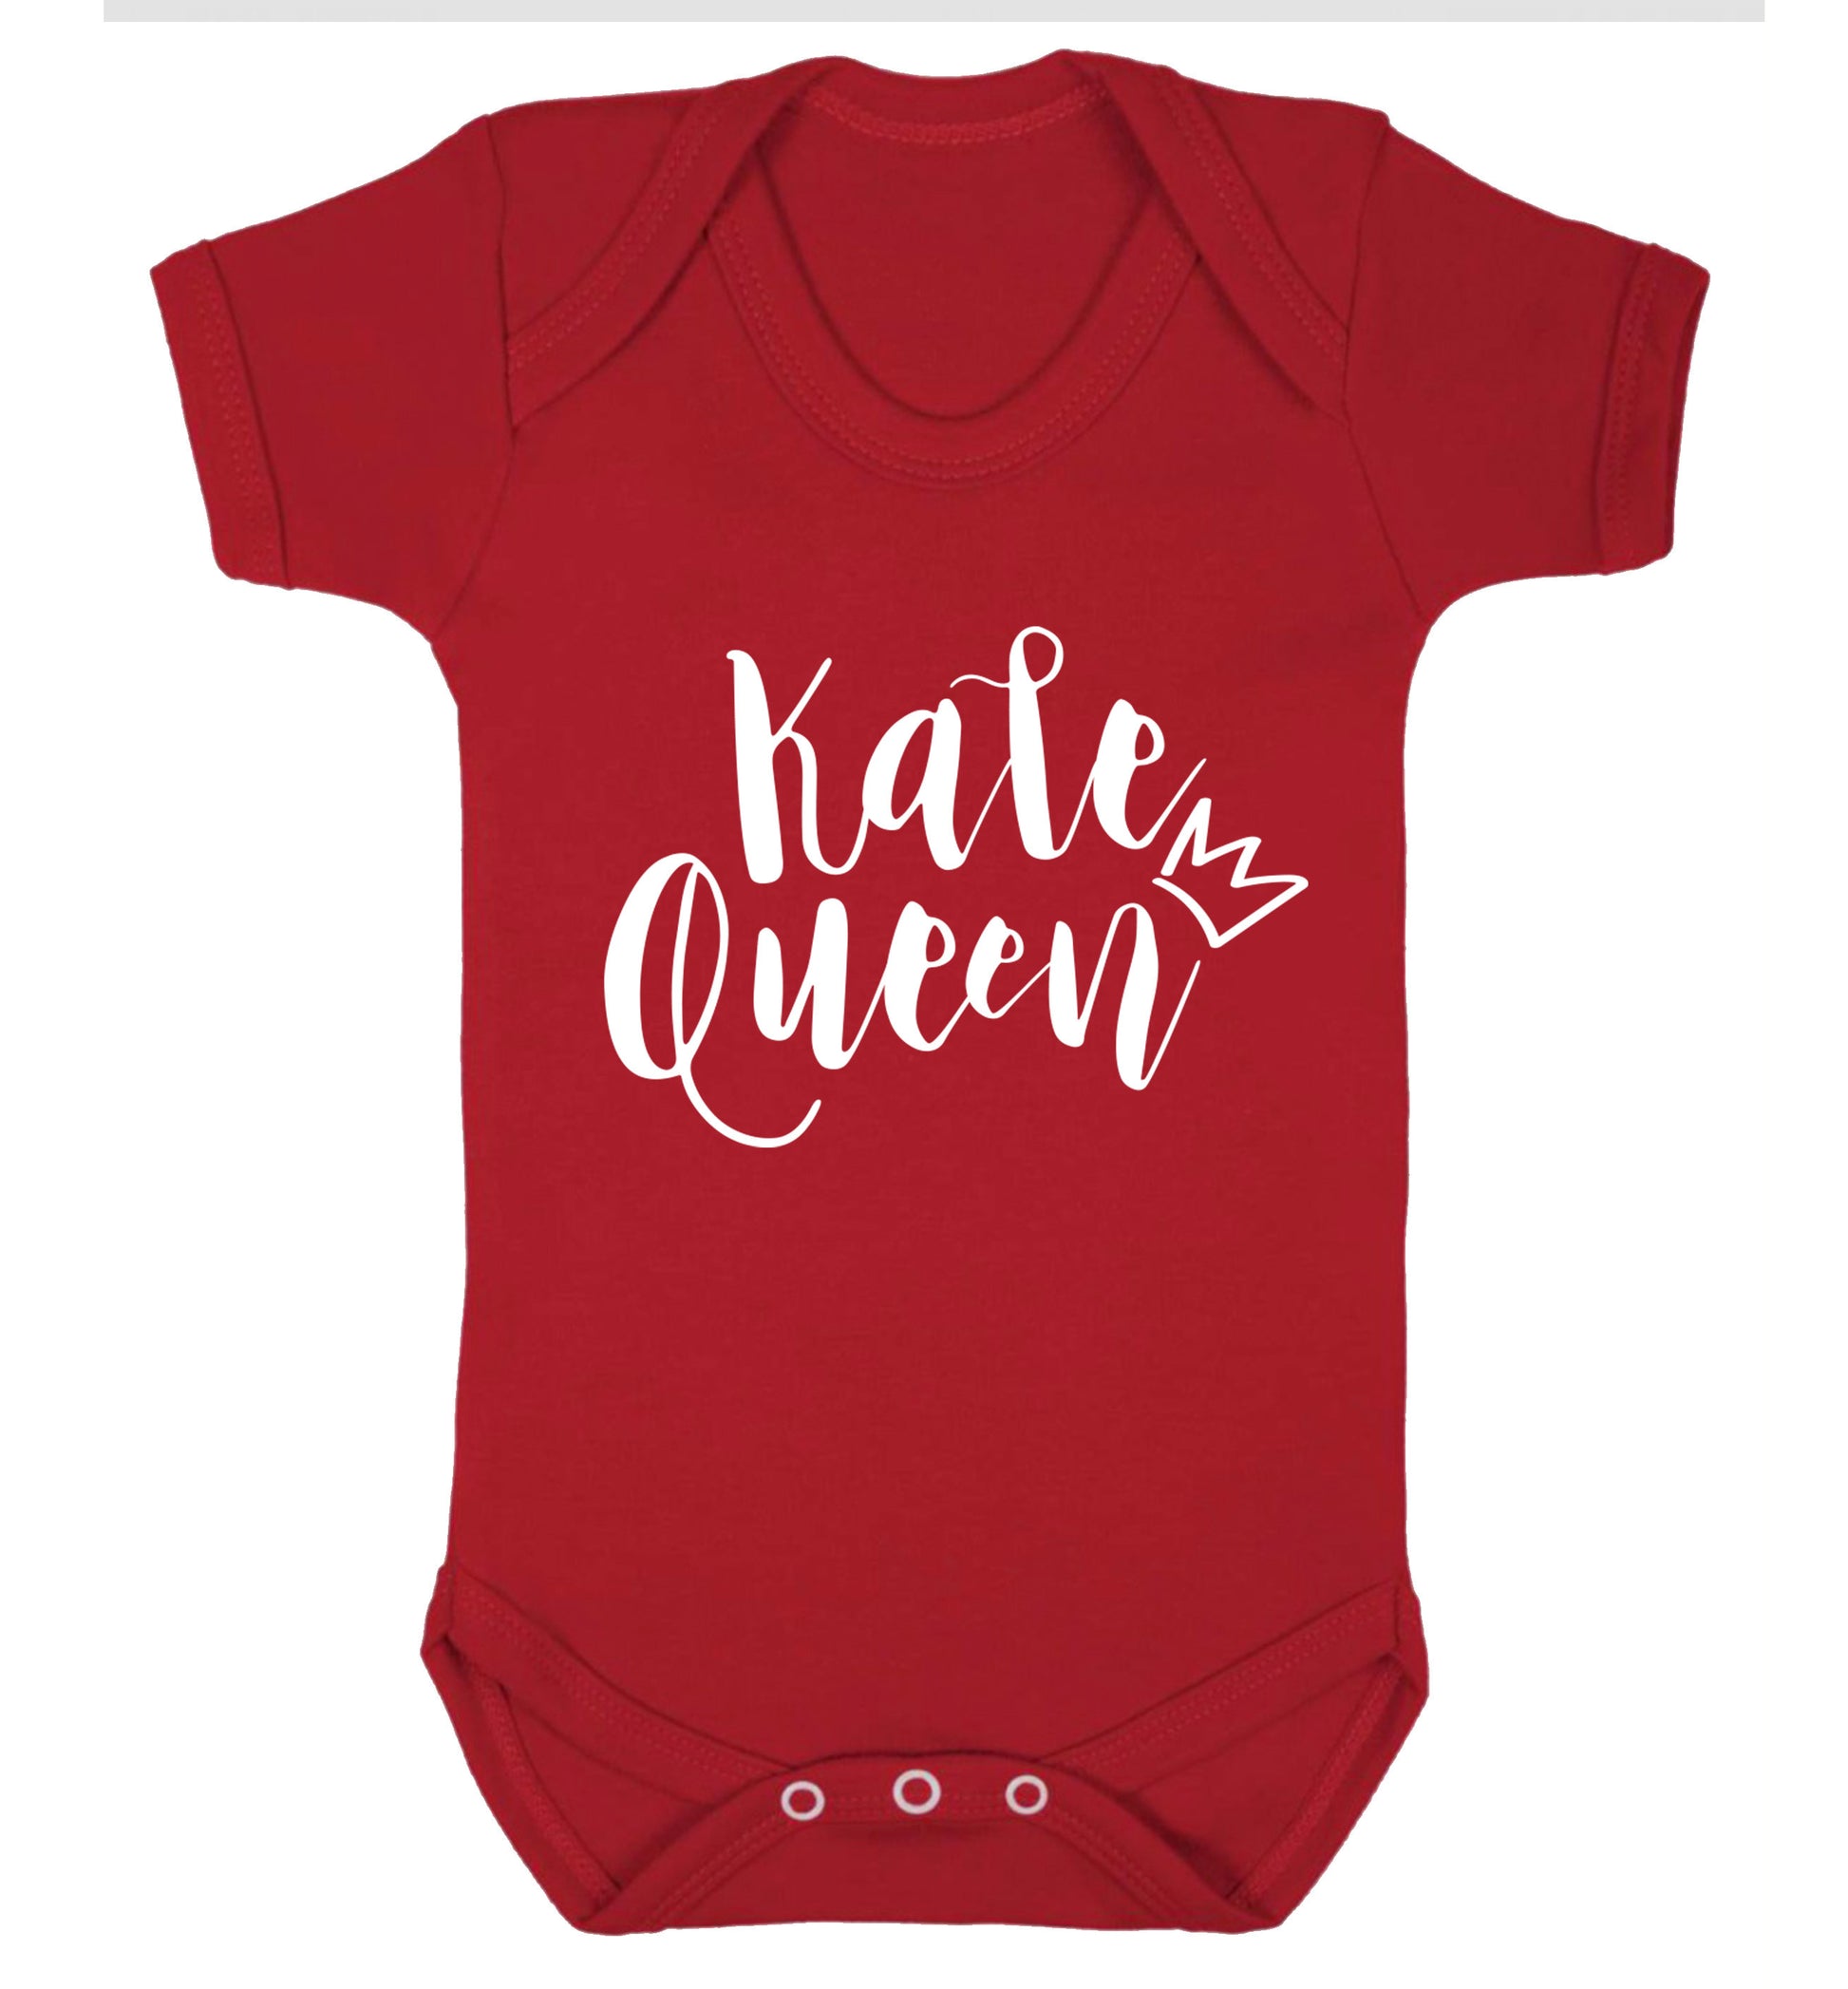 Kale Queen Baby Vest red 18-24 months